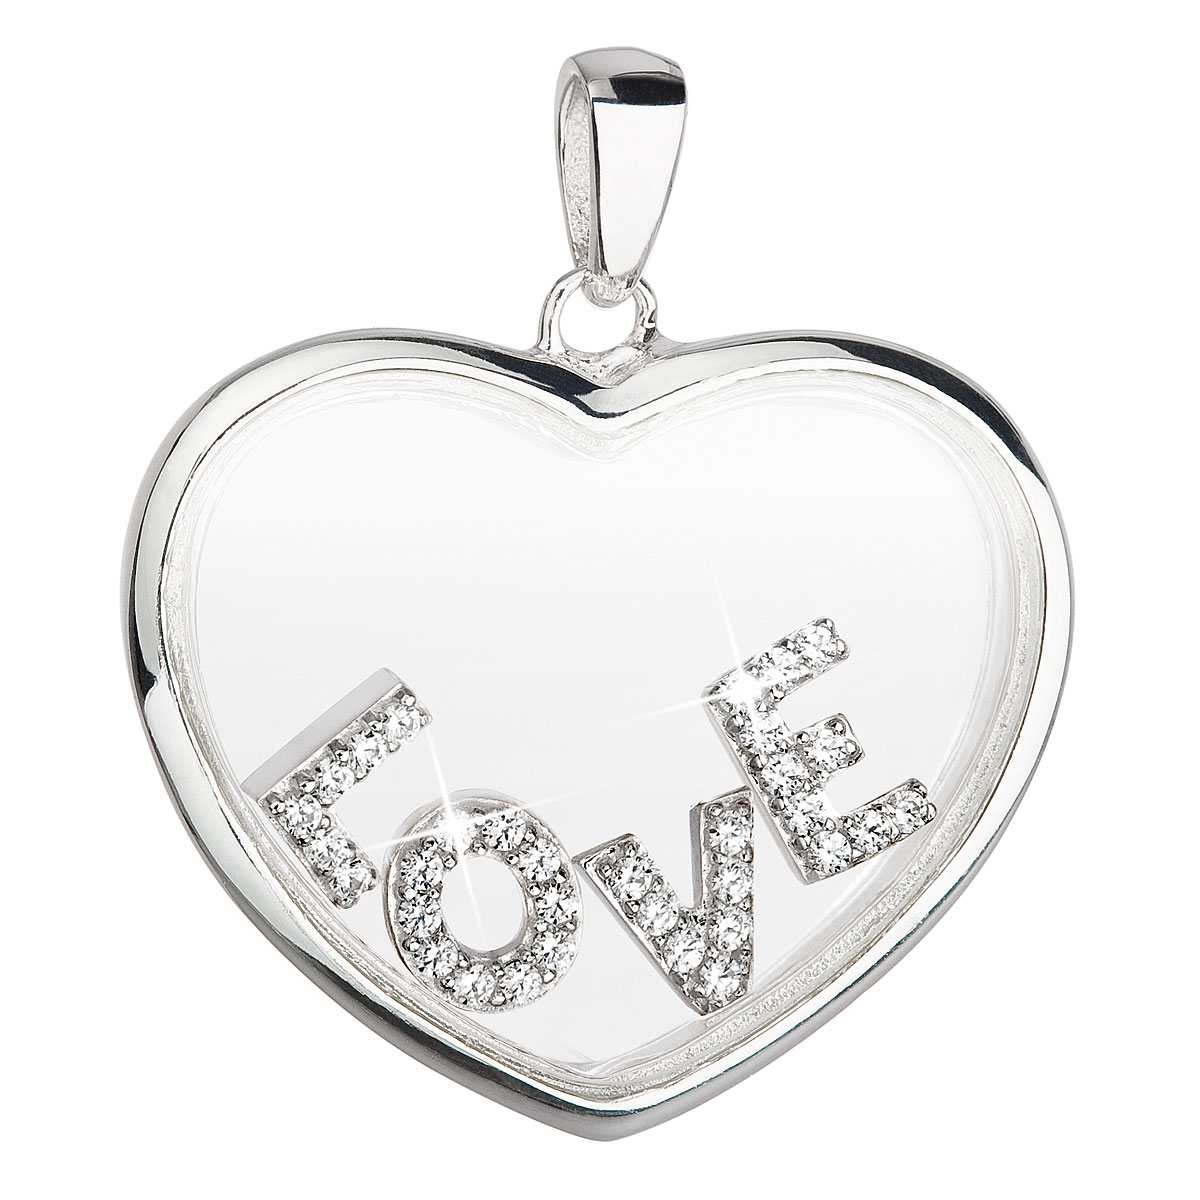 Strieborný prívesok srdce Love s kryštálmi Crystals from Swarovski ®